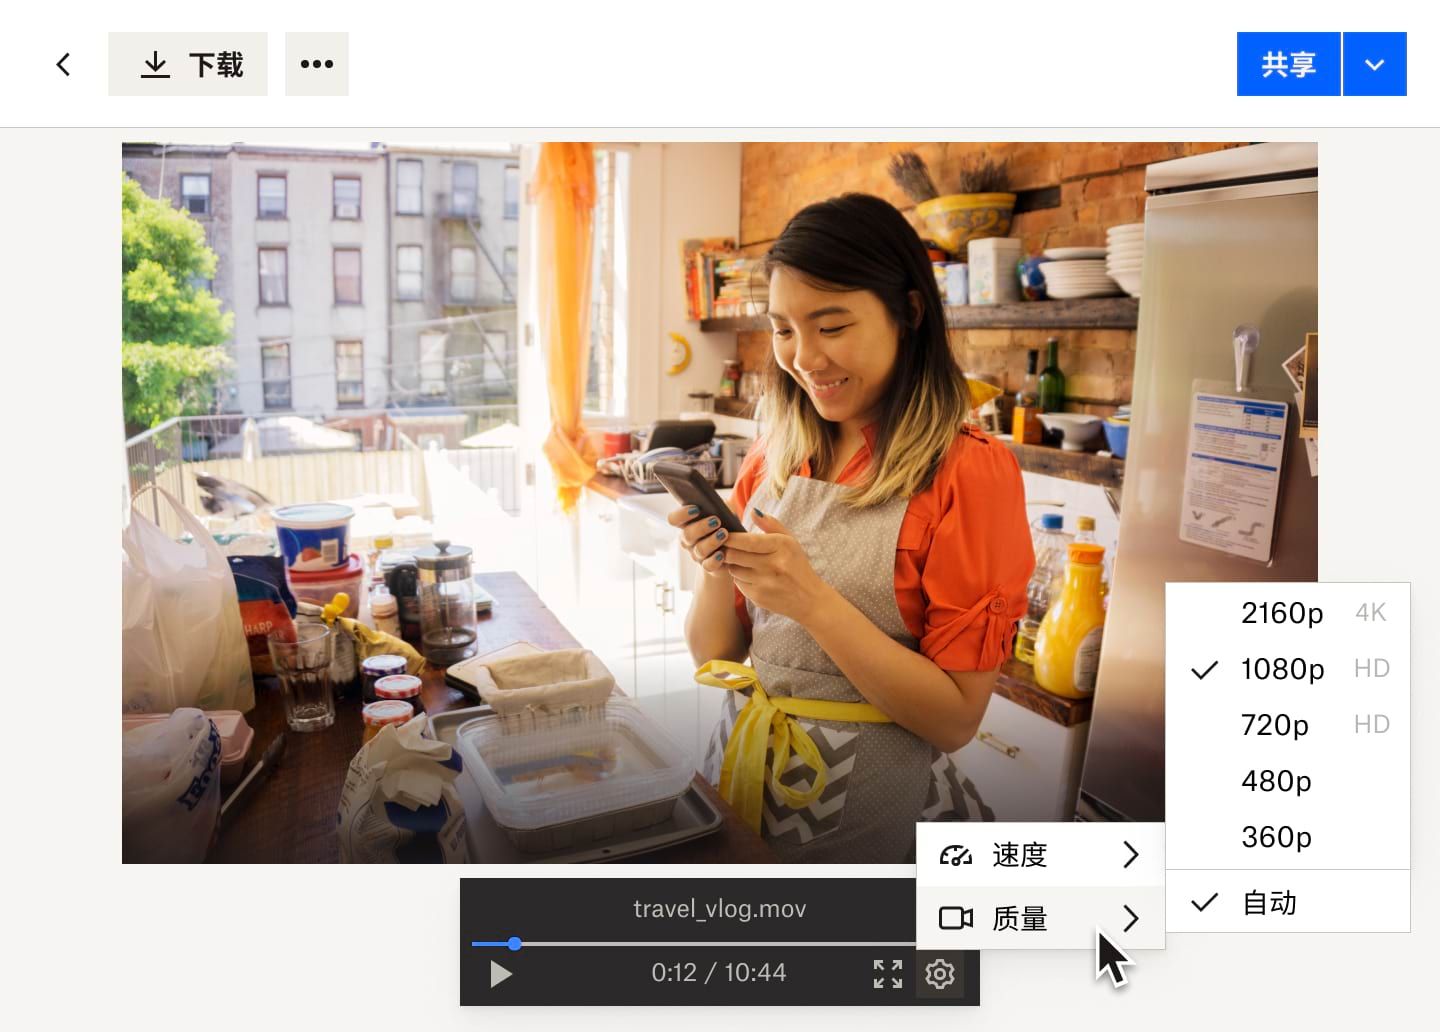 设置按钮下拉菜单显示的是 Dropbox 上的面包房女工视频文件的视频播放速度和视频画质选项。